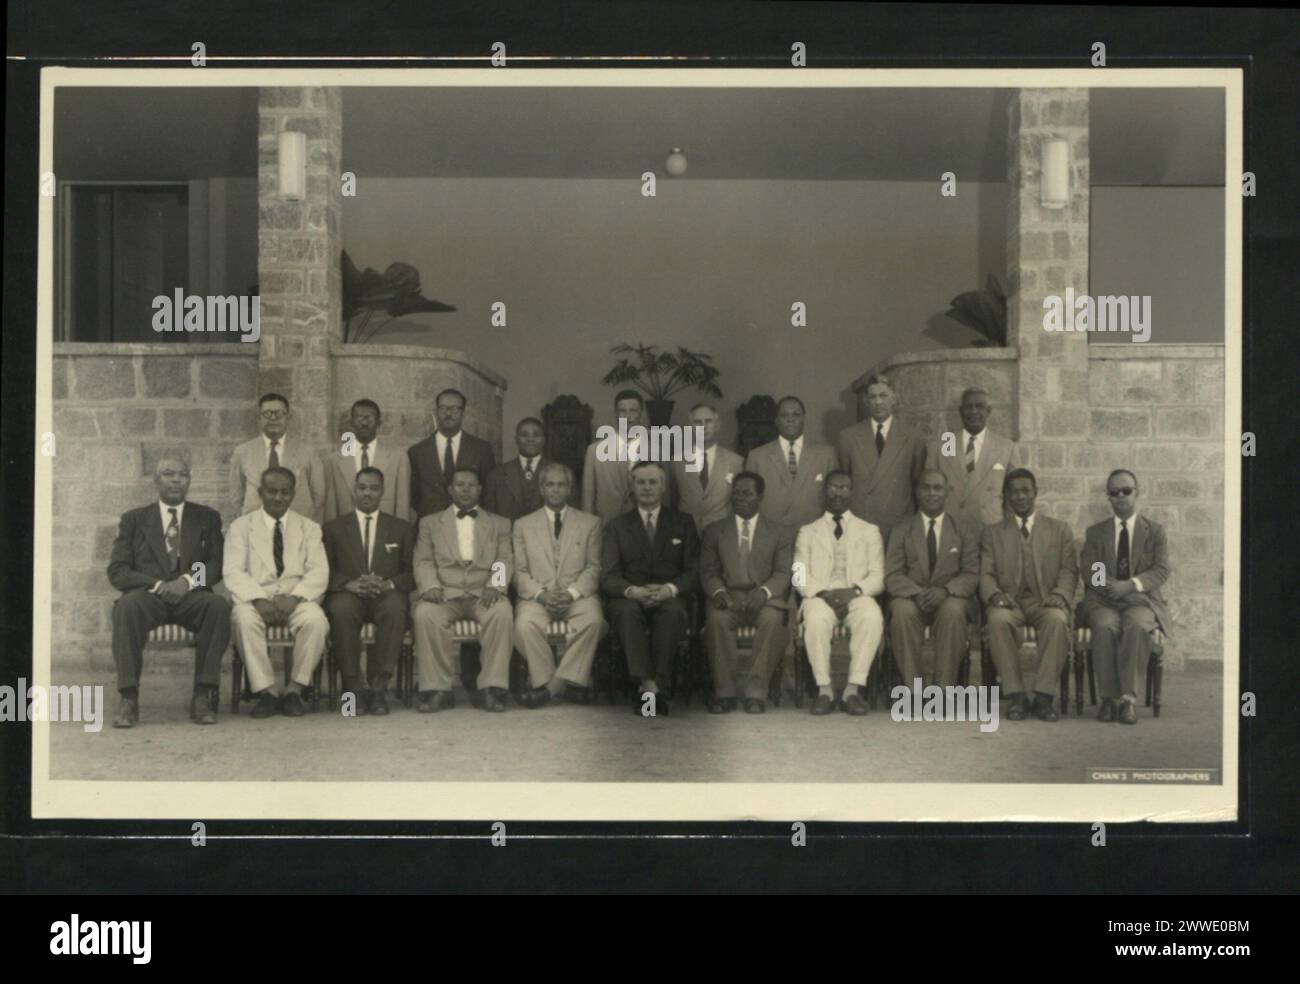 Beschreibung: Mitglieder des Beirats des Generalgouverneurs fotografiert im Haus des Generalgouverneurs während des Treffens im Januar 1958. Stehend (von links nach rechts): Sir Archibal Cuke (Barbados), Hr. B. Benn (Britisch-Guayana), Hr. R.G. Mapp (Barbados), E.L. Allen (Jamaika), J.S. Moerdecai (Bundessekretär), C. Wylie (Bundesstaatsanwalt), Hr. F.A. Glasspole (Jamaika), L.N. Blache-Fraser (Bundesfinanzsekretär), Alexander W.J.). Sitzend (von links nach rechts): Hr. V.C. Bird (Antigua), Hr. Sir Grantley Adams (Barbados), Hr. F.A. Baron (Dominica), Hr. Stockfoto